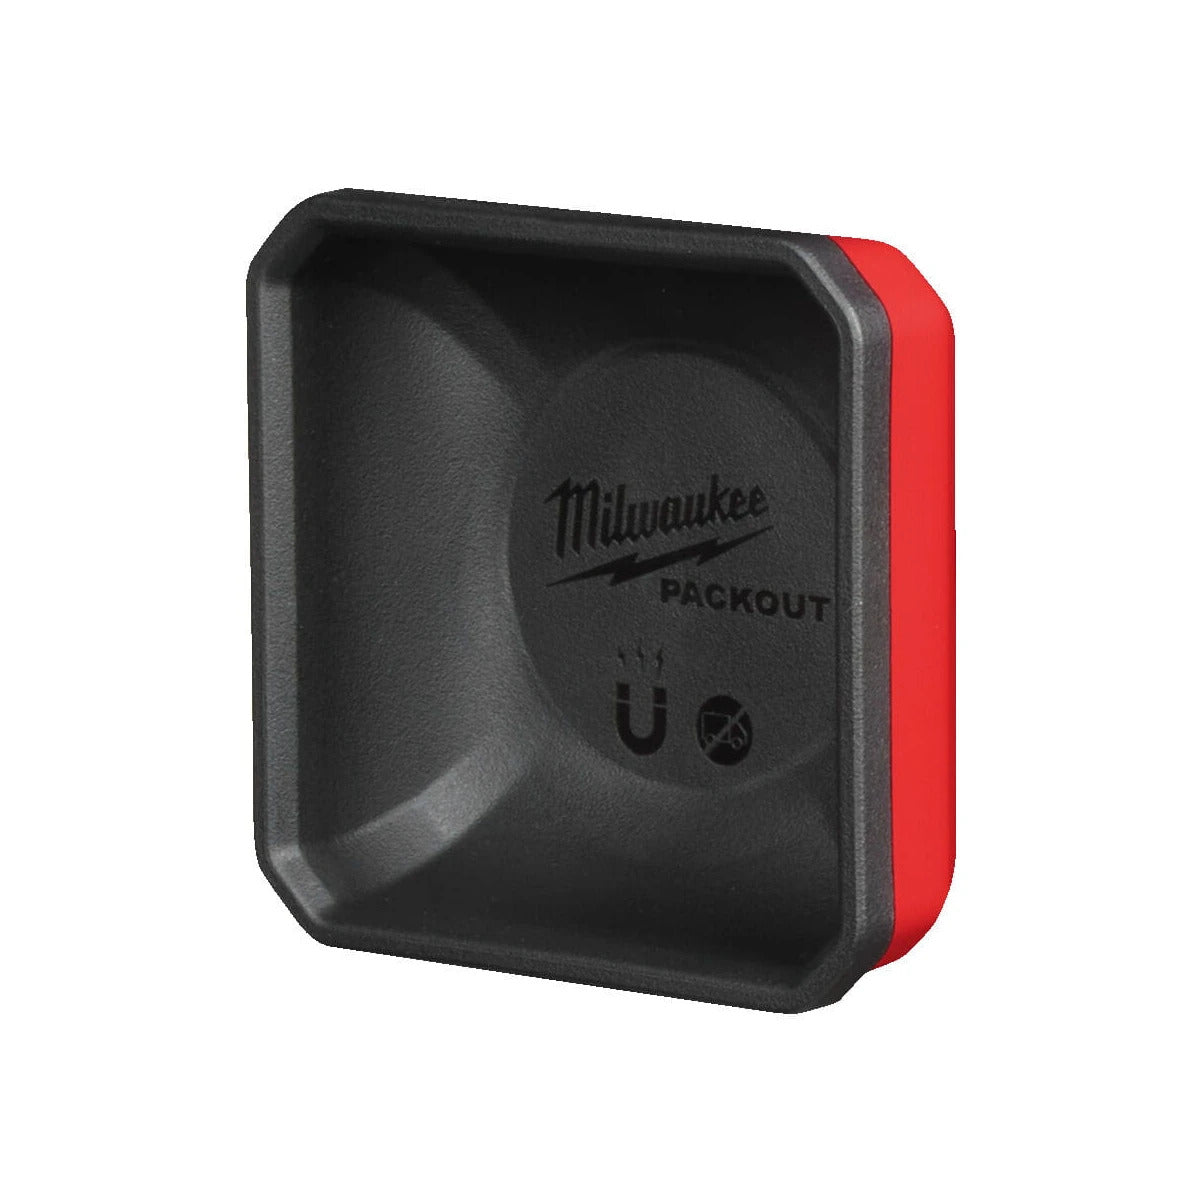 Milwaukee® Packout Magnetschale 10 x 10 cm ideal für Schrauben, Nägel etc.